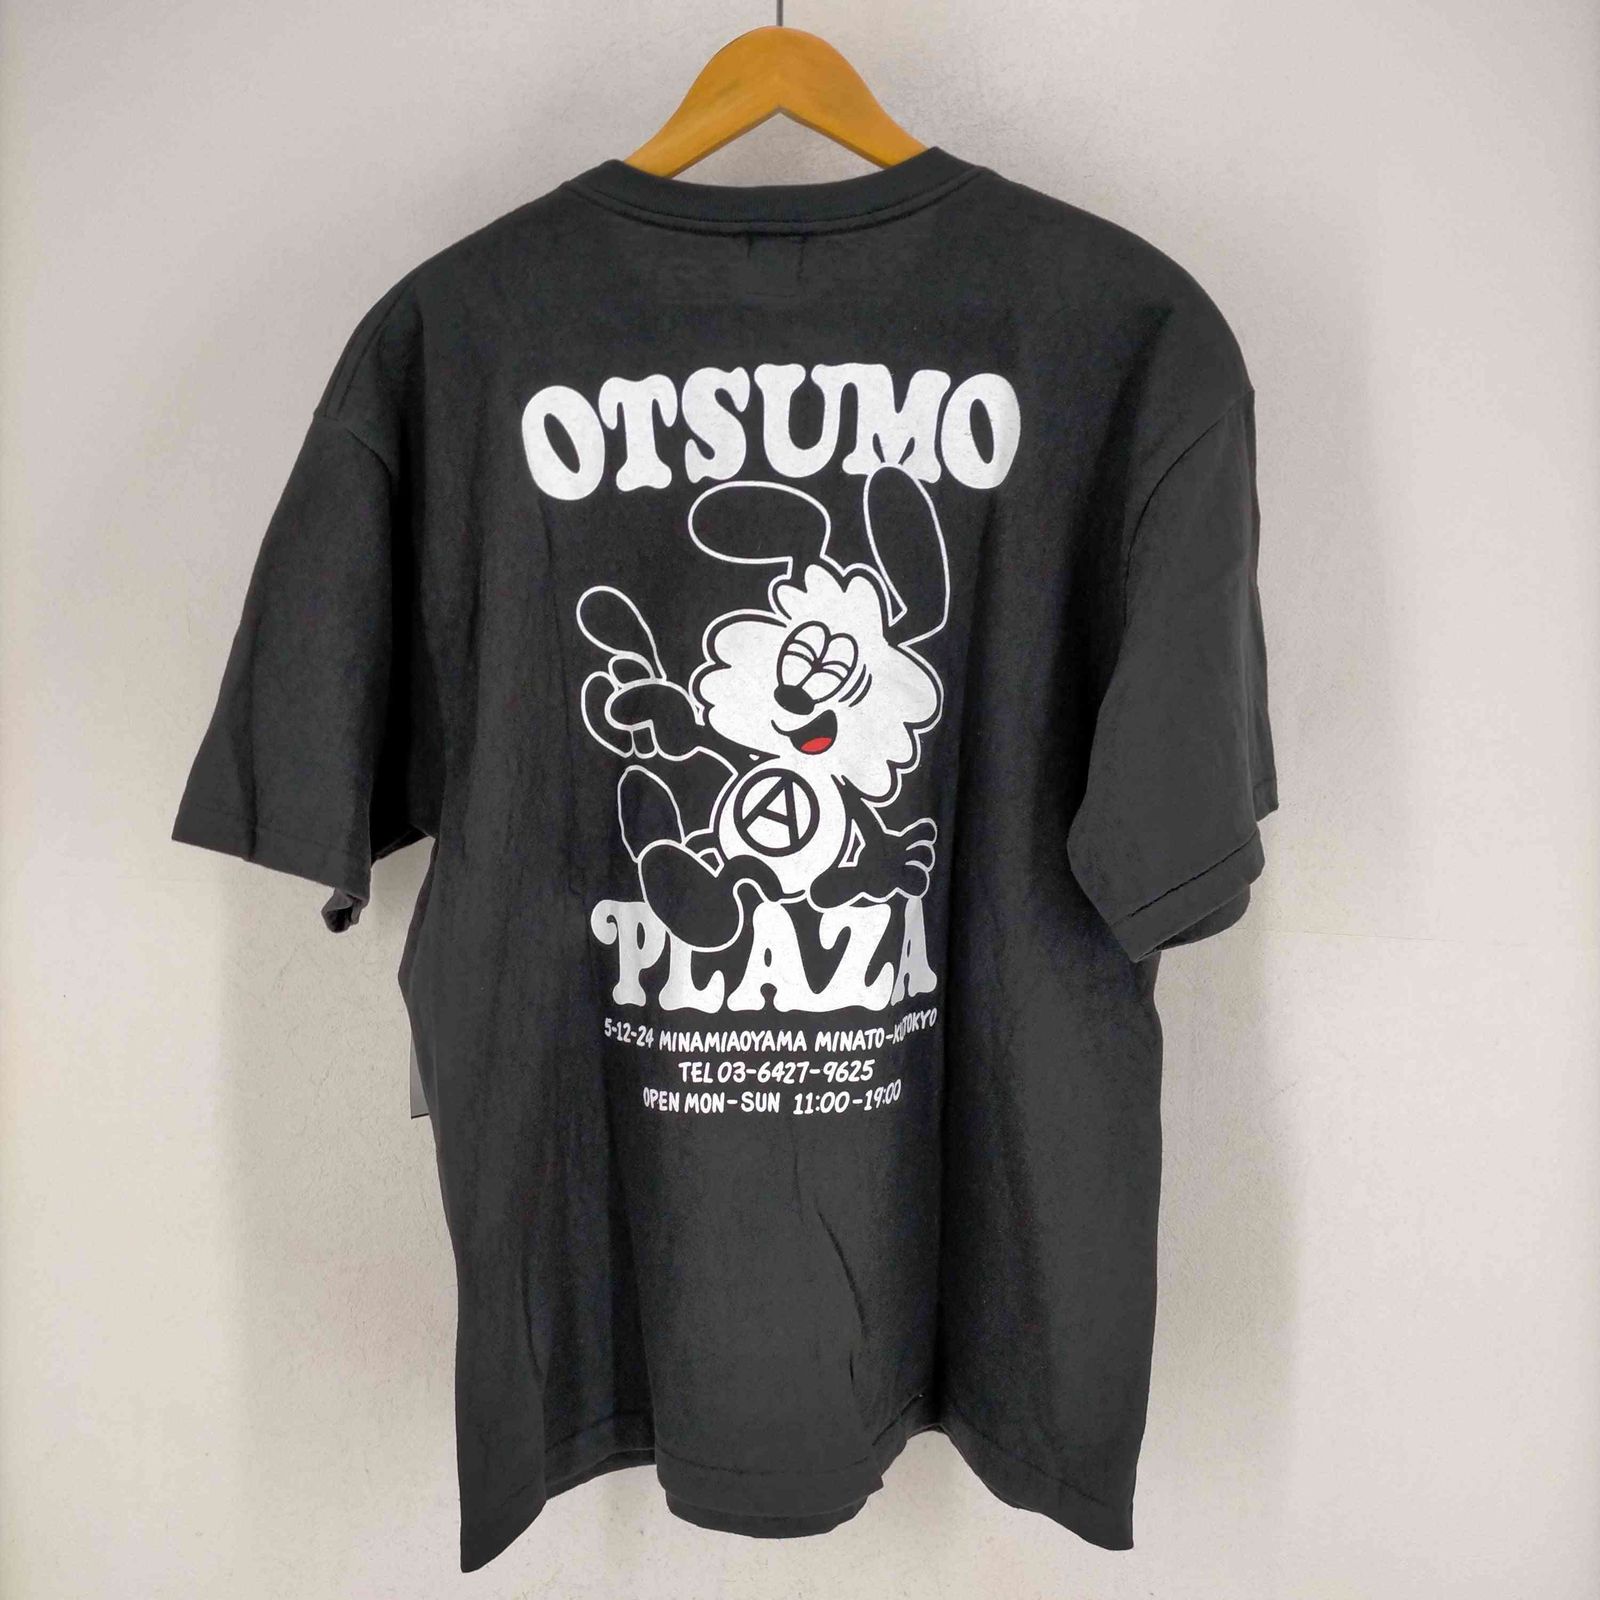 非売品 Otsumo Plaza Verdy オープニングTシャツ貴重非売品のVe